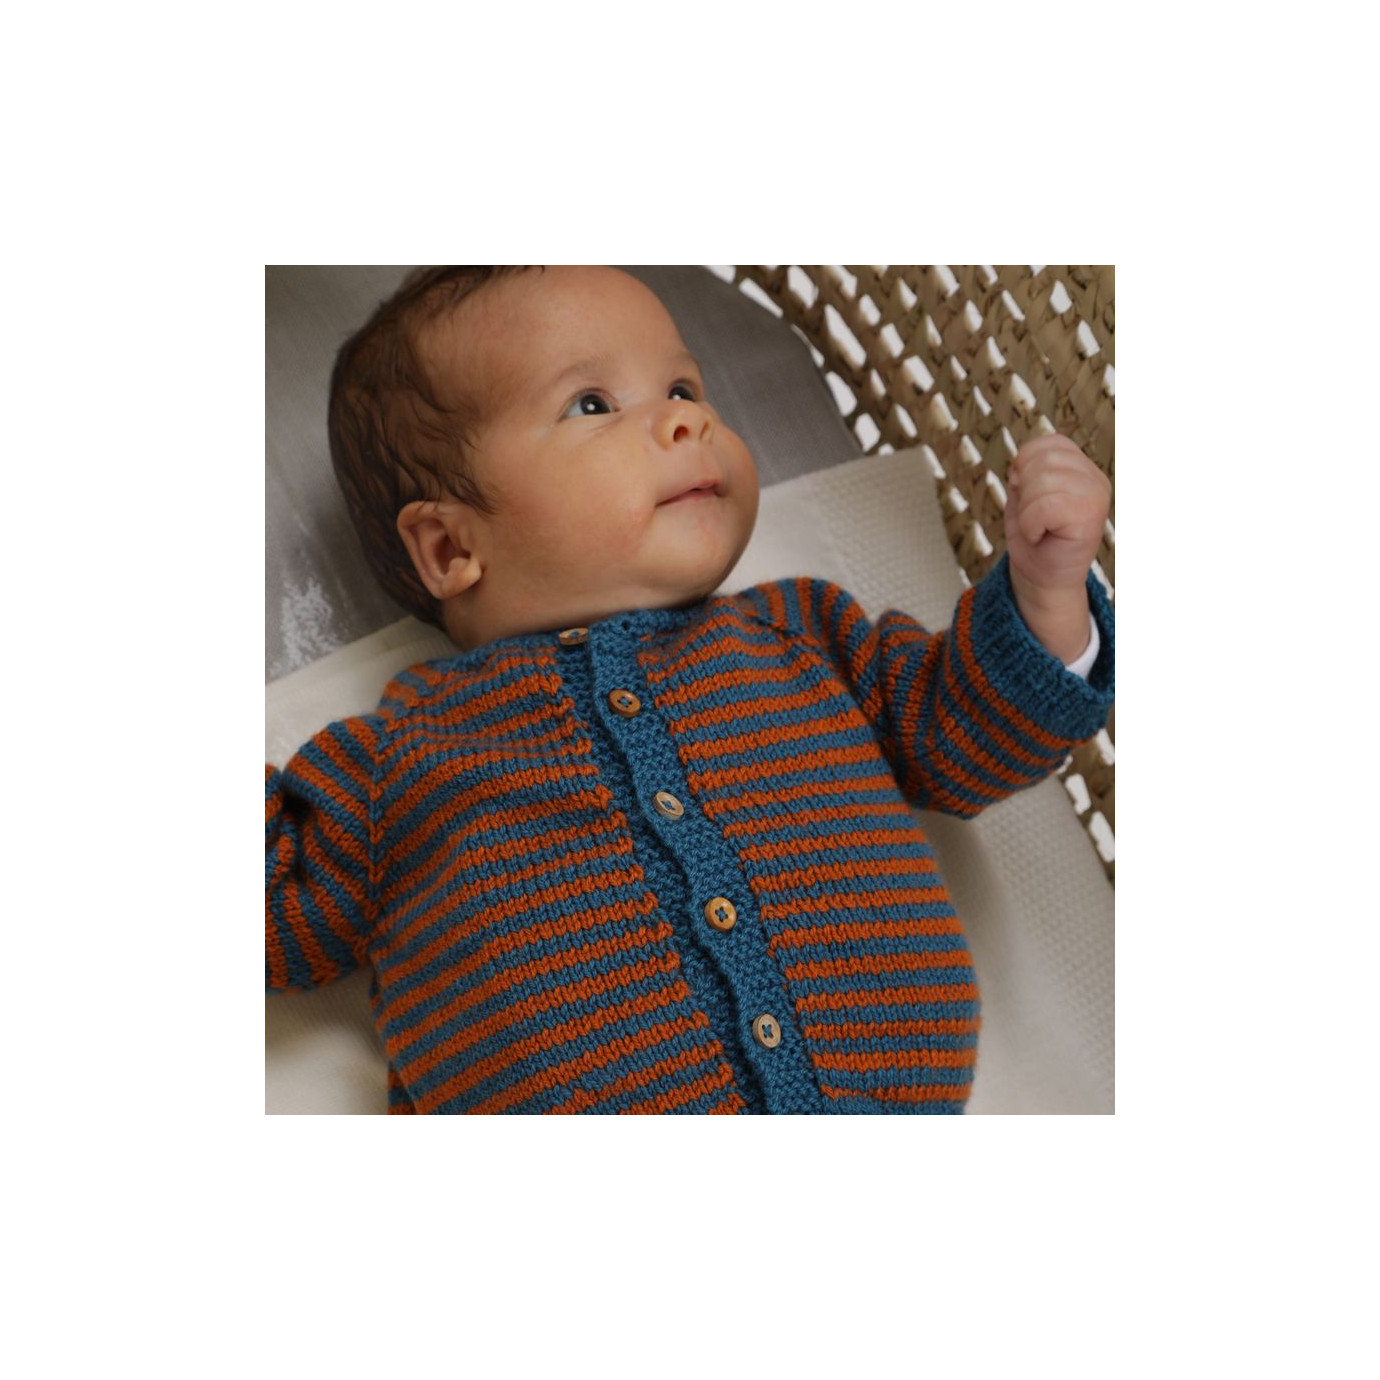 modele tricot gilet bebe garcon